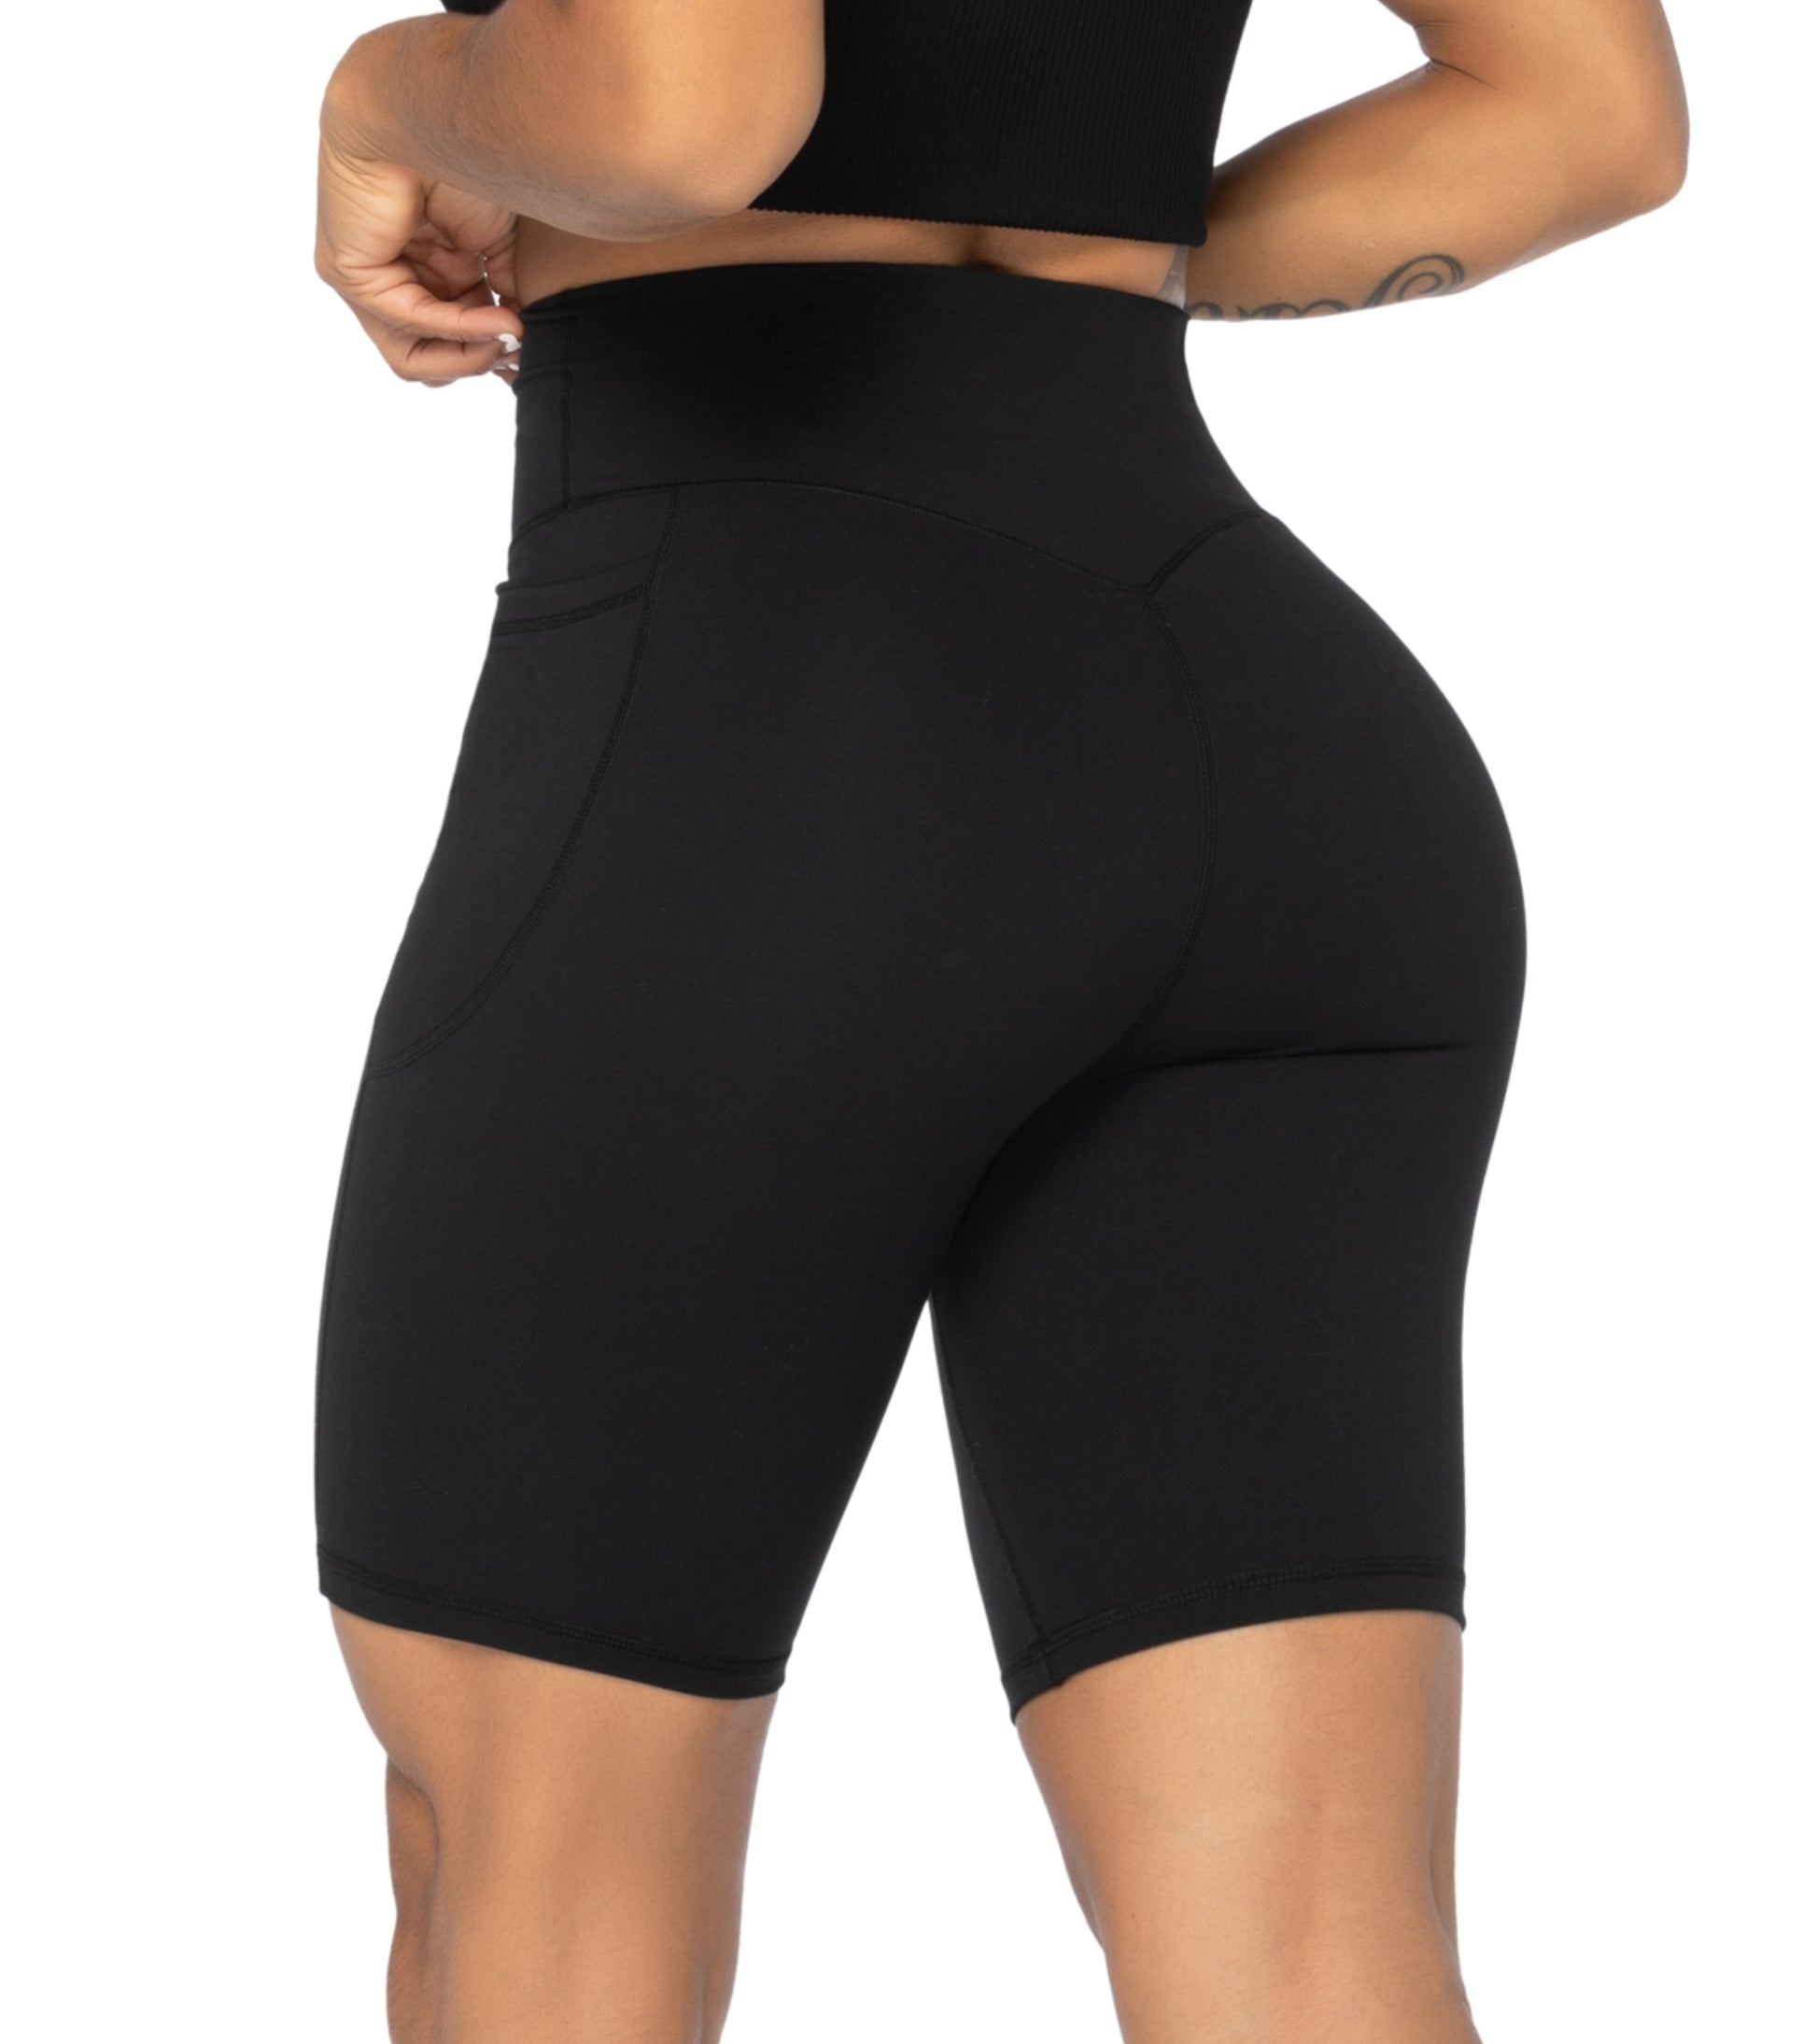 Sunzel Women's Biker Shorts in High Waist Tummy Control with Deep Pockets